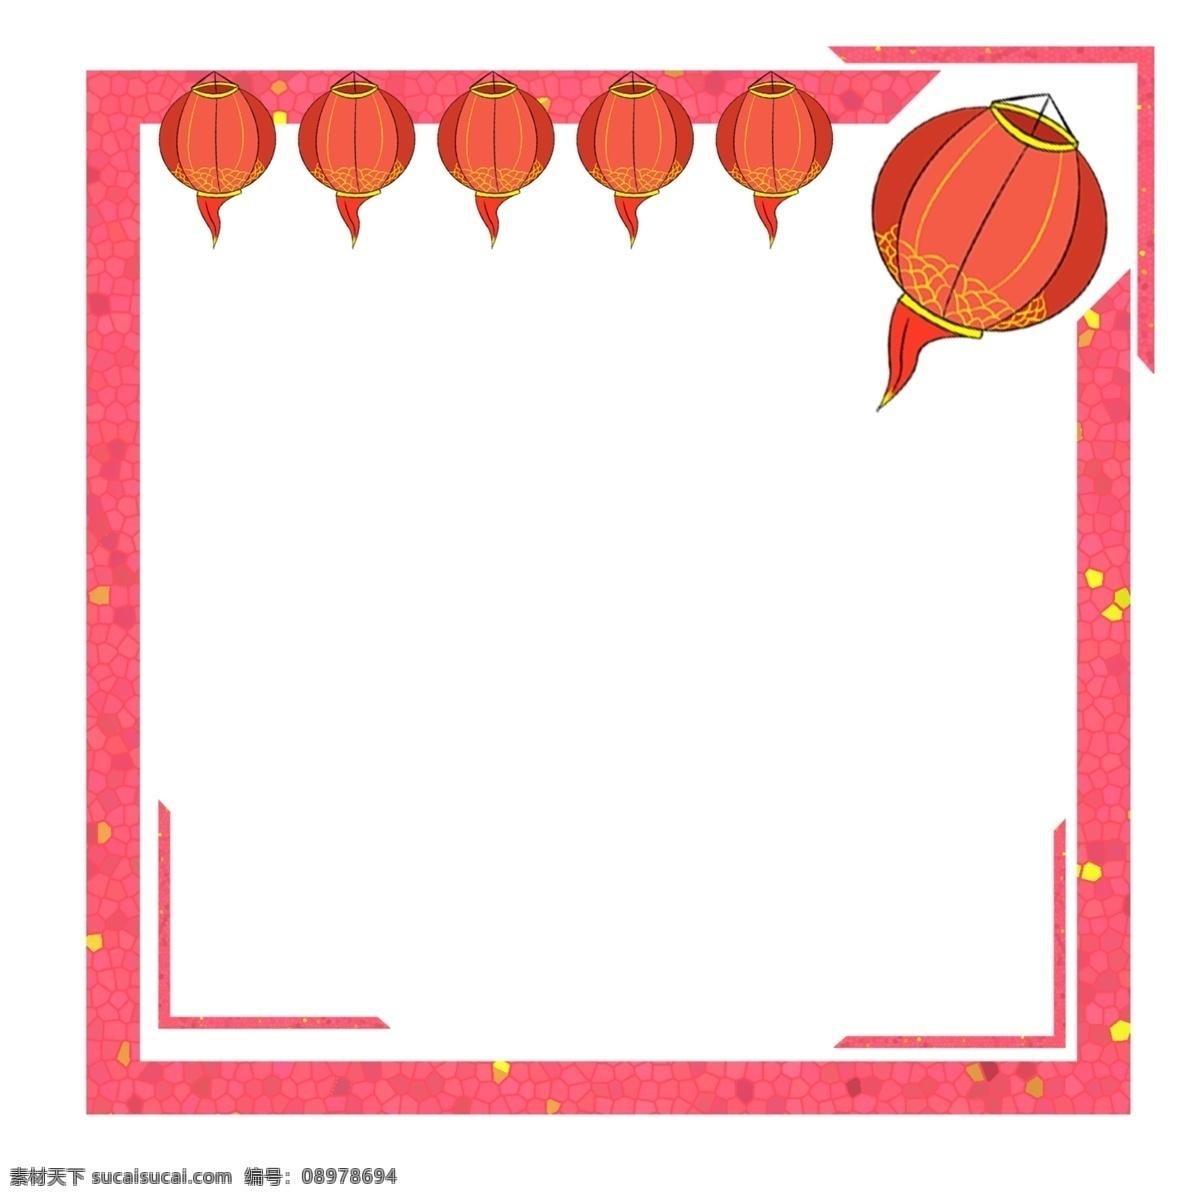 春节 新年 喜庆 边框 新年快乐 灯笼 红色 猪年 猪年边框 春节边框 手绘风格